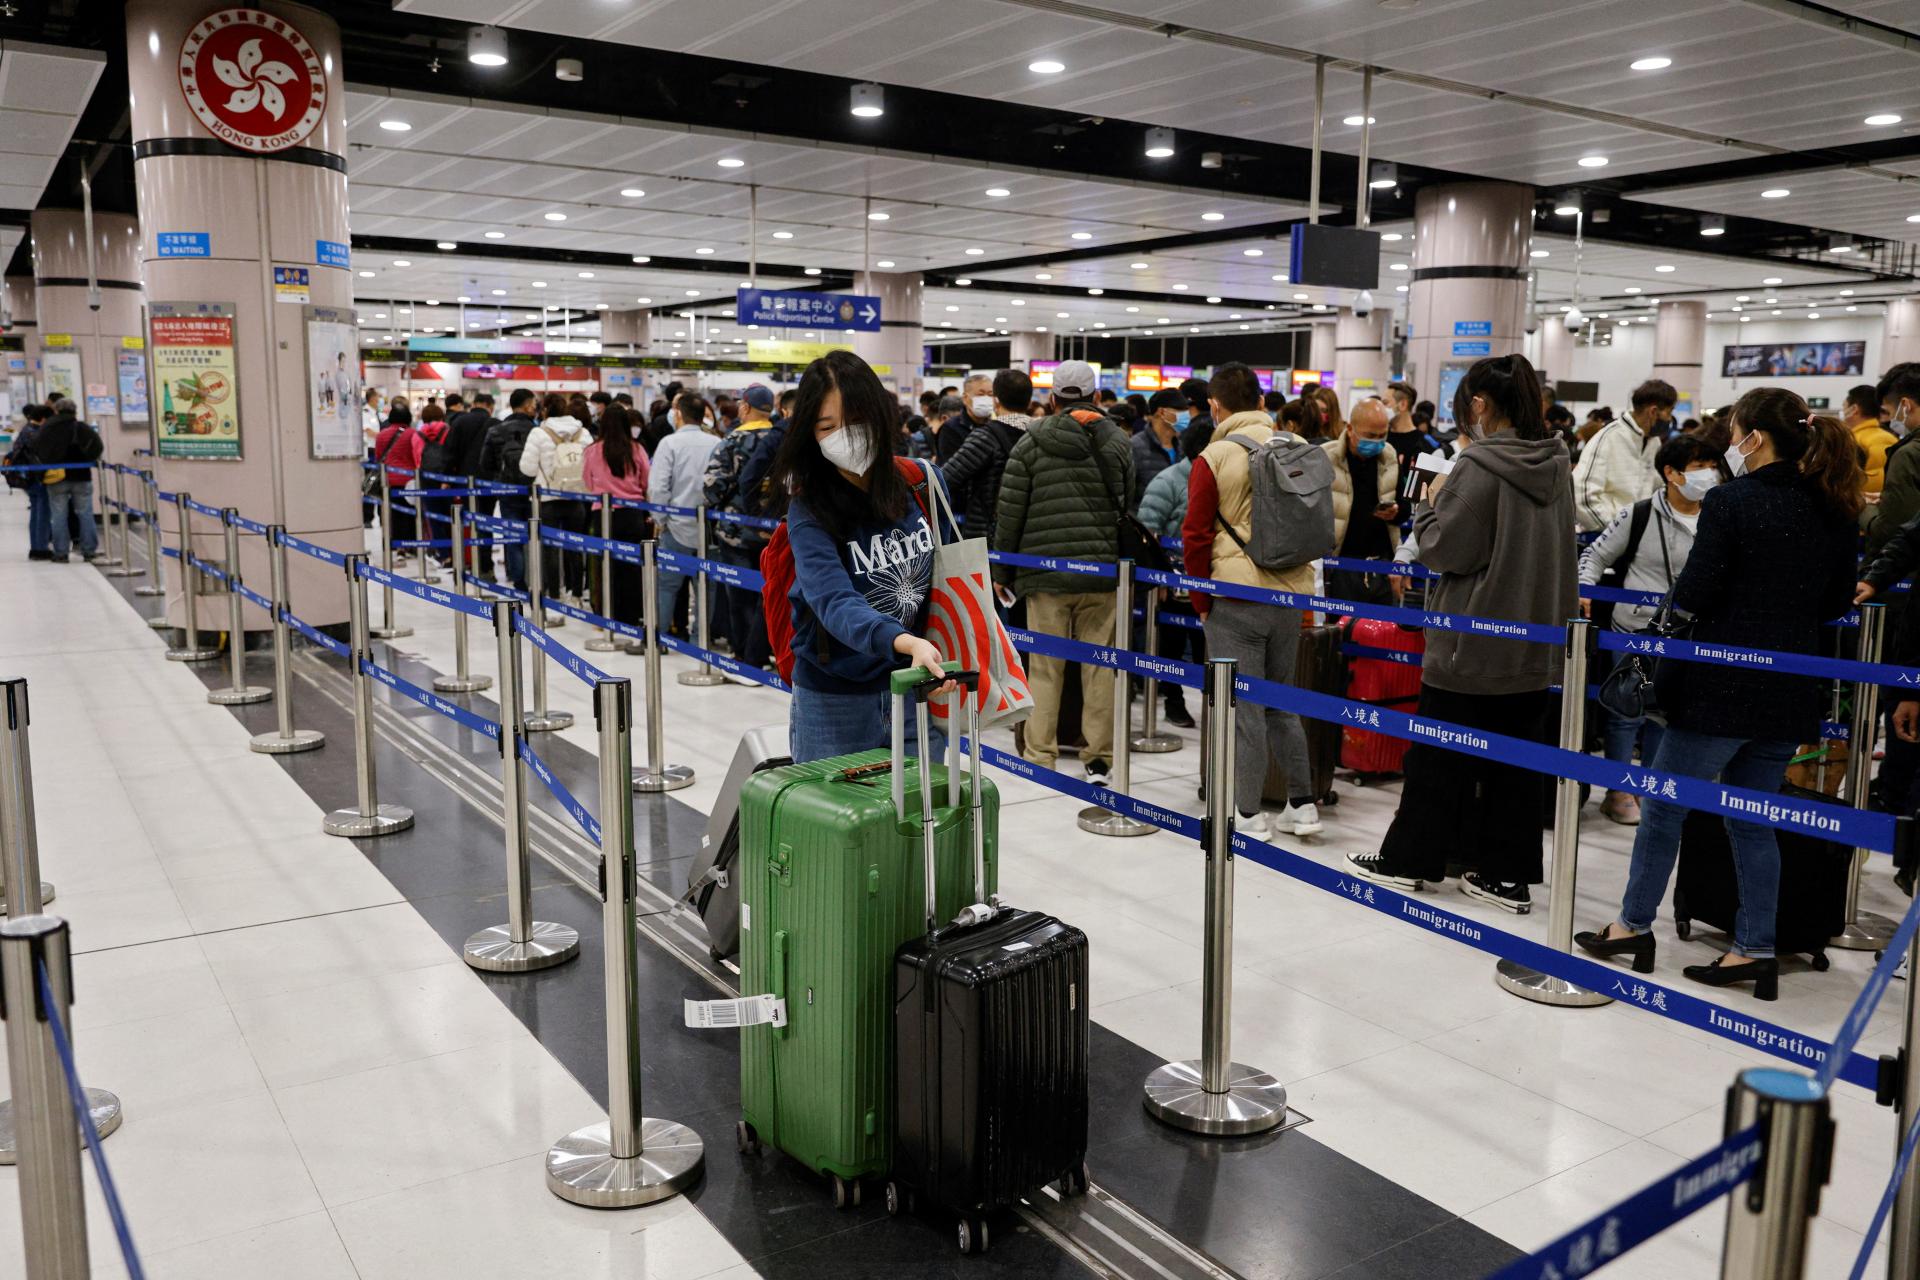 Čína znova otvorila hranice a zrušila pandemické opatrenia, do krajiny už smerujú tisíce ľudí z Hongkongu